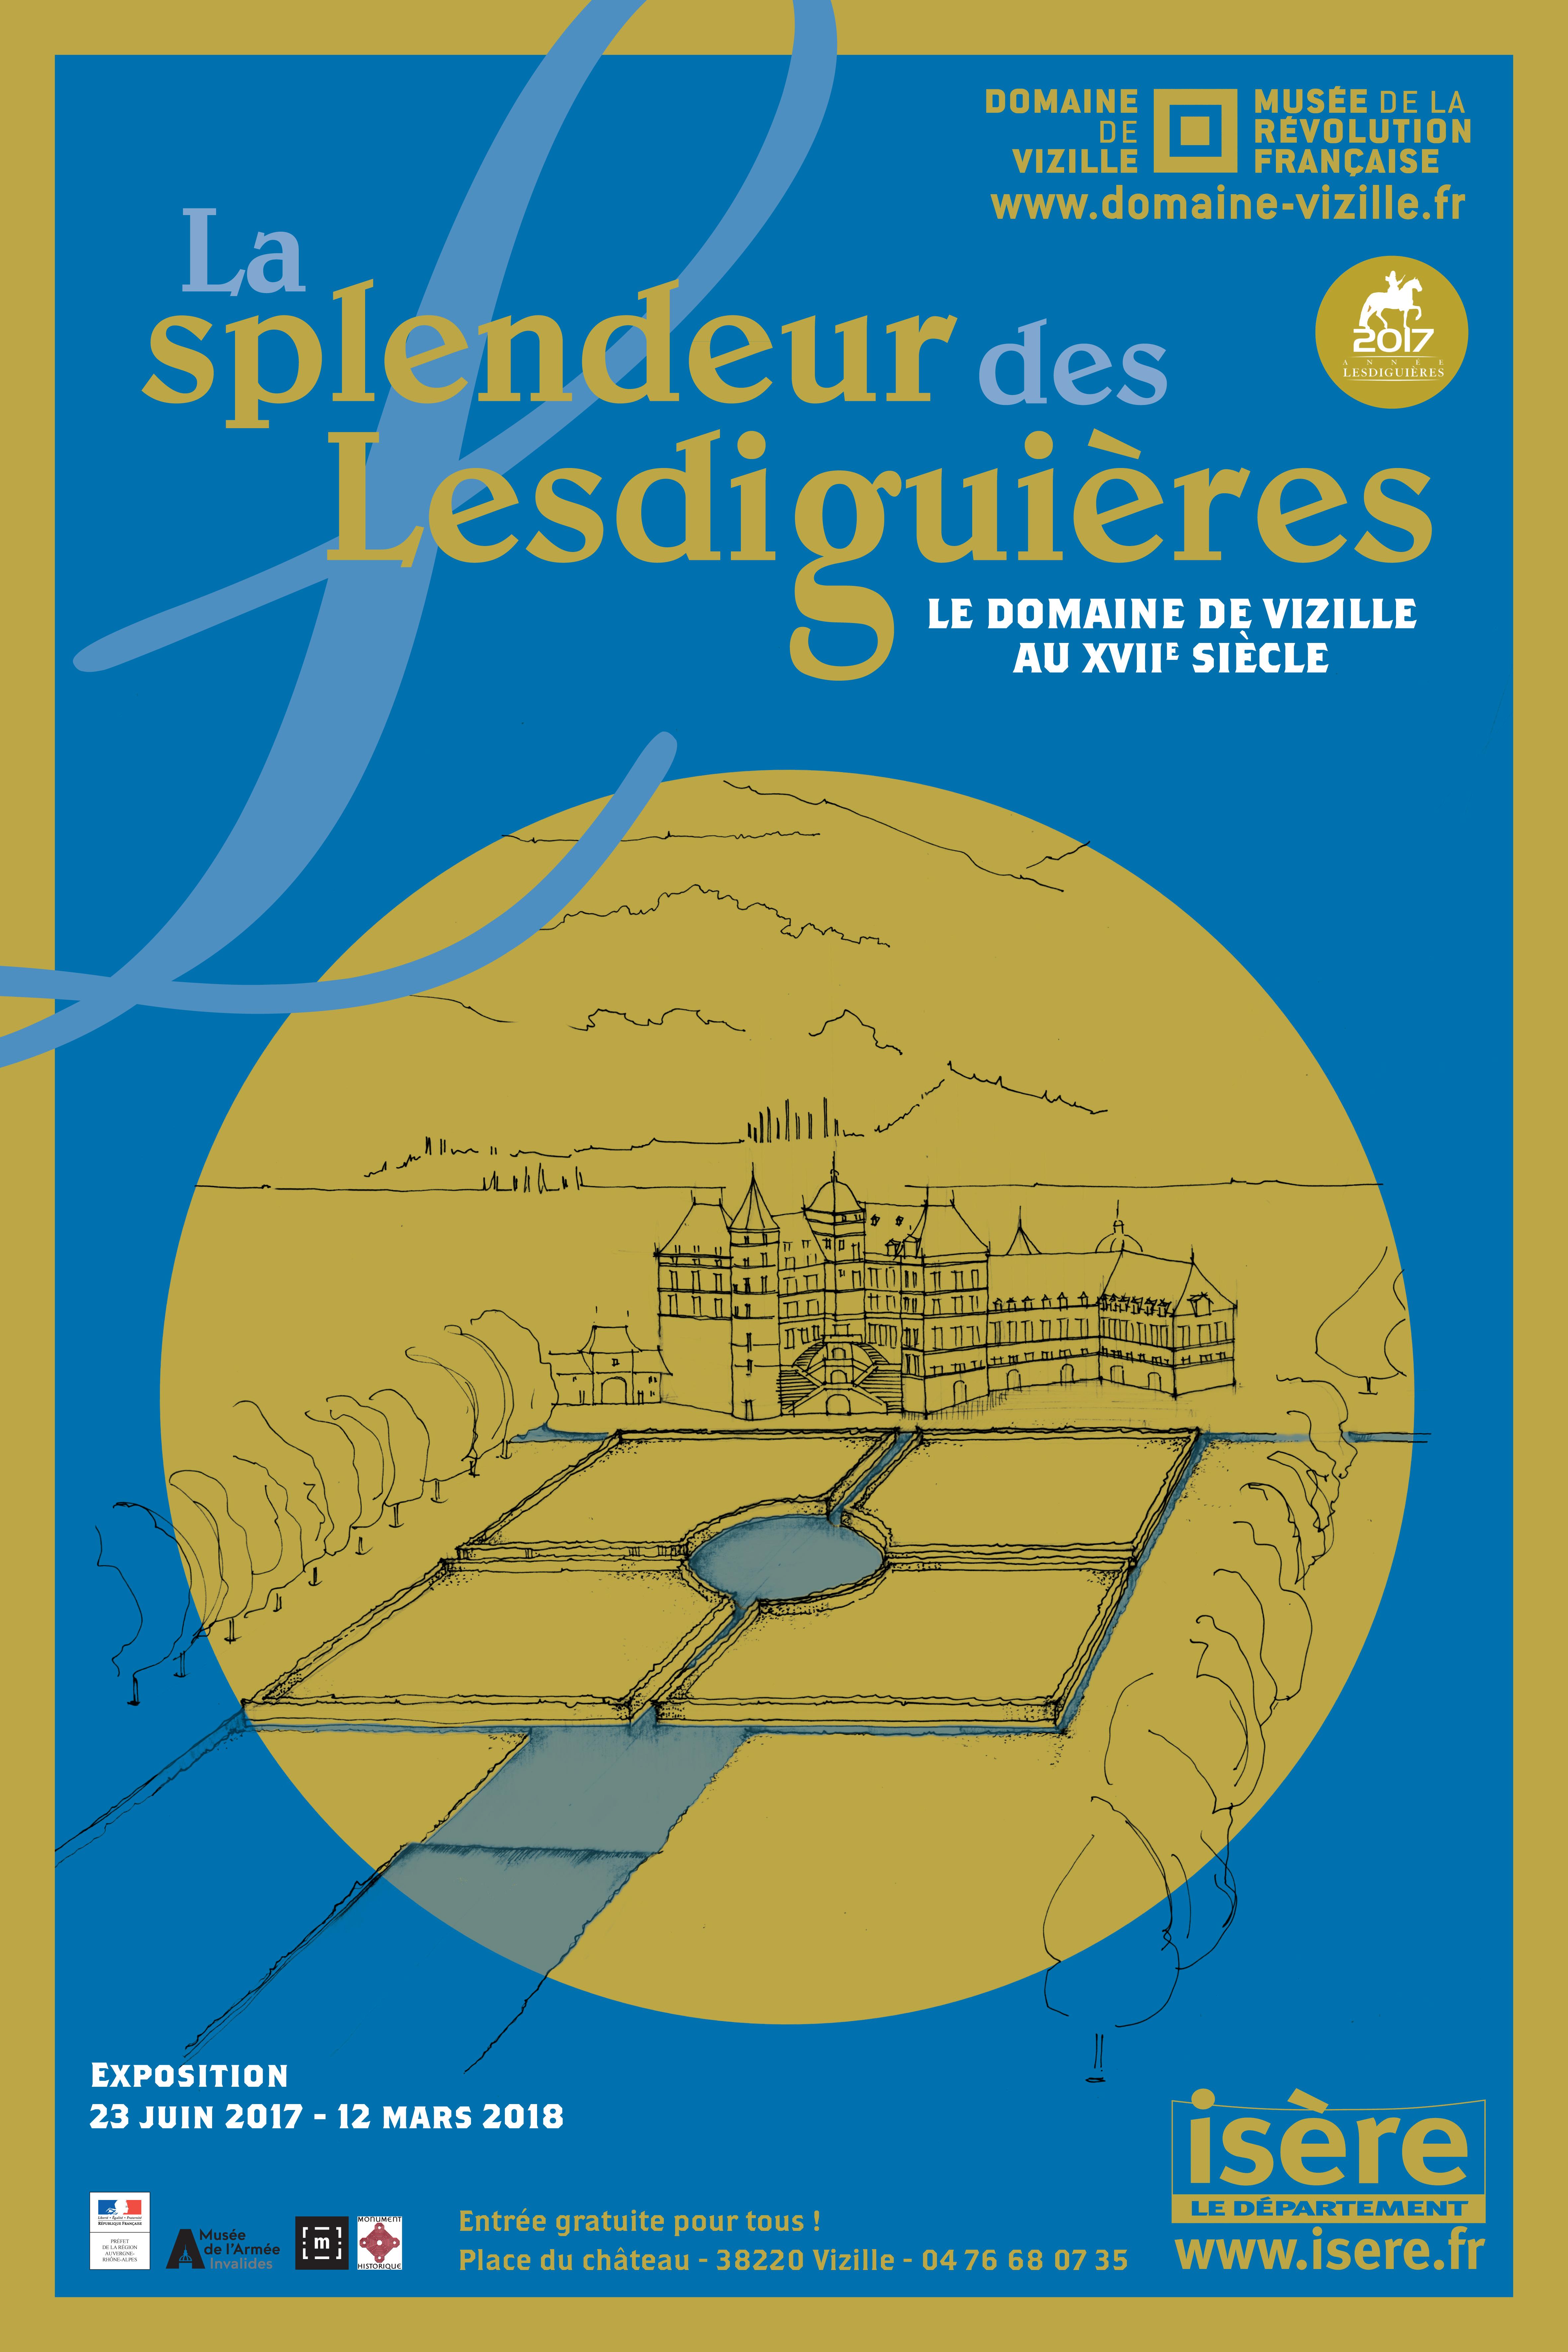 La splendeur de Lesdiguières © Département de l'Isère/Domaine de Vizille